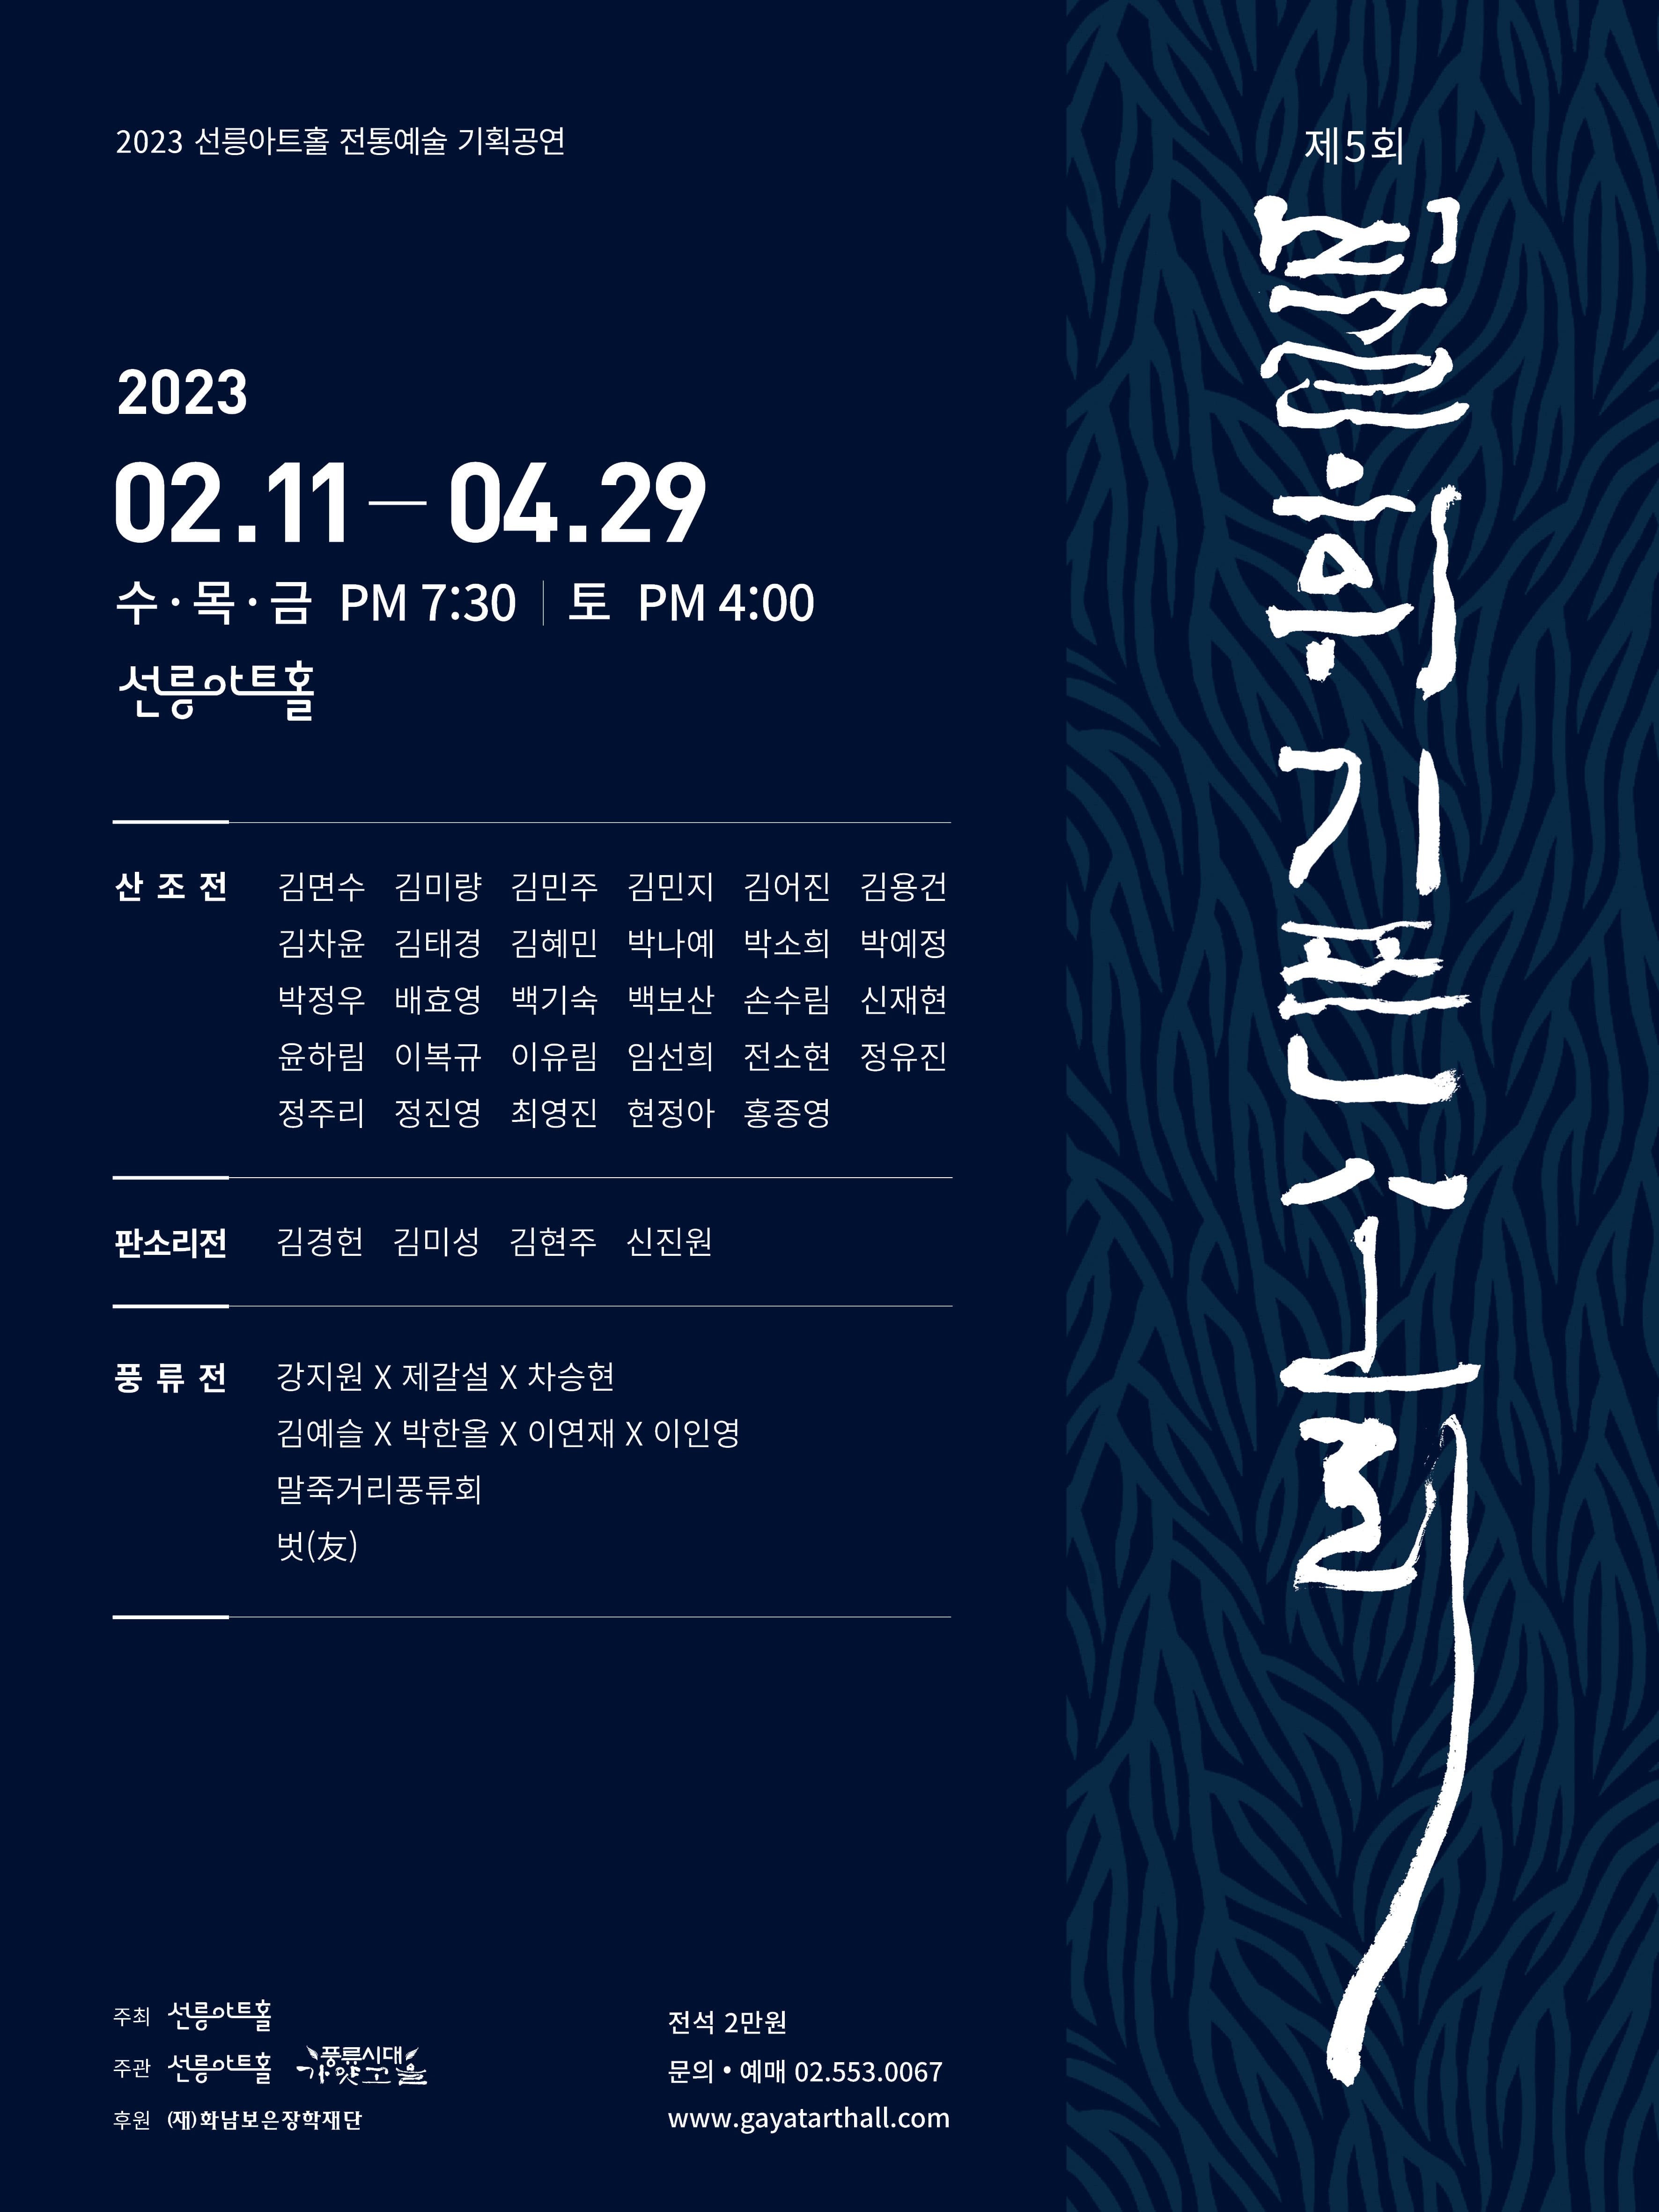 2023 선릉아트홀 전통예술 기획공연 제5회 불휘기픈소리